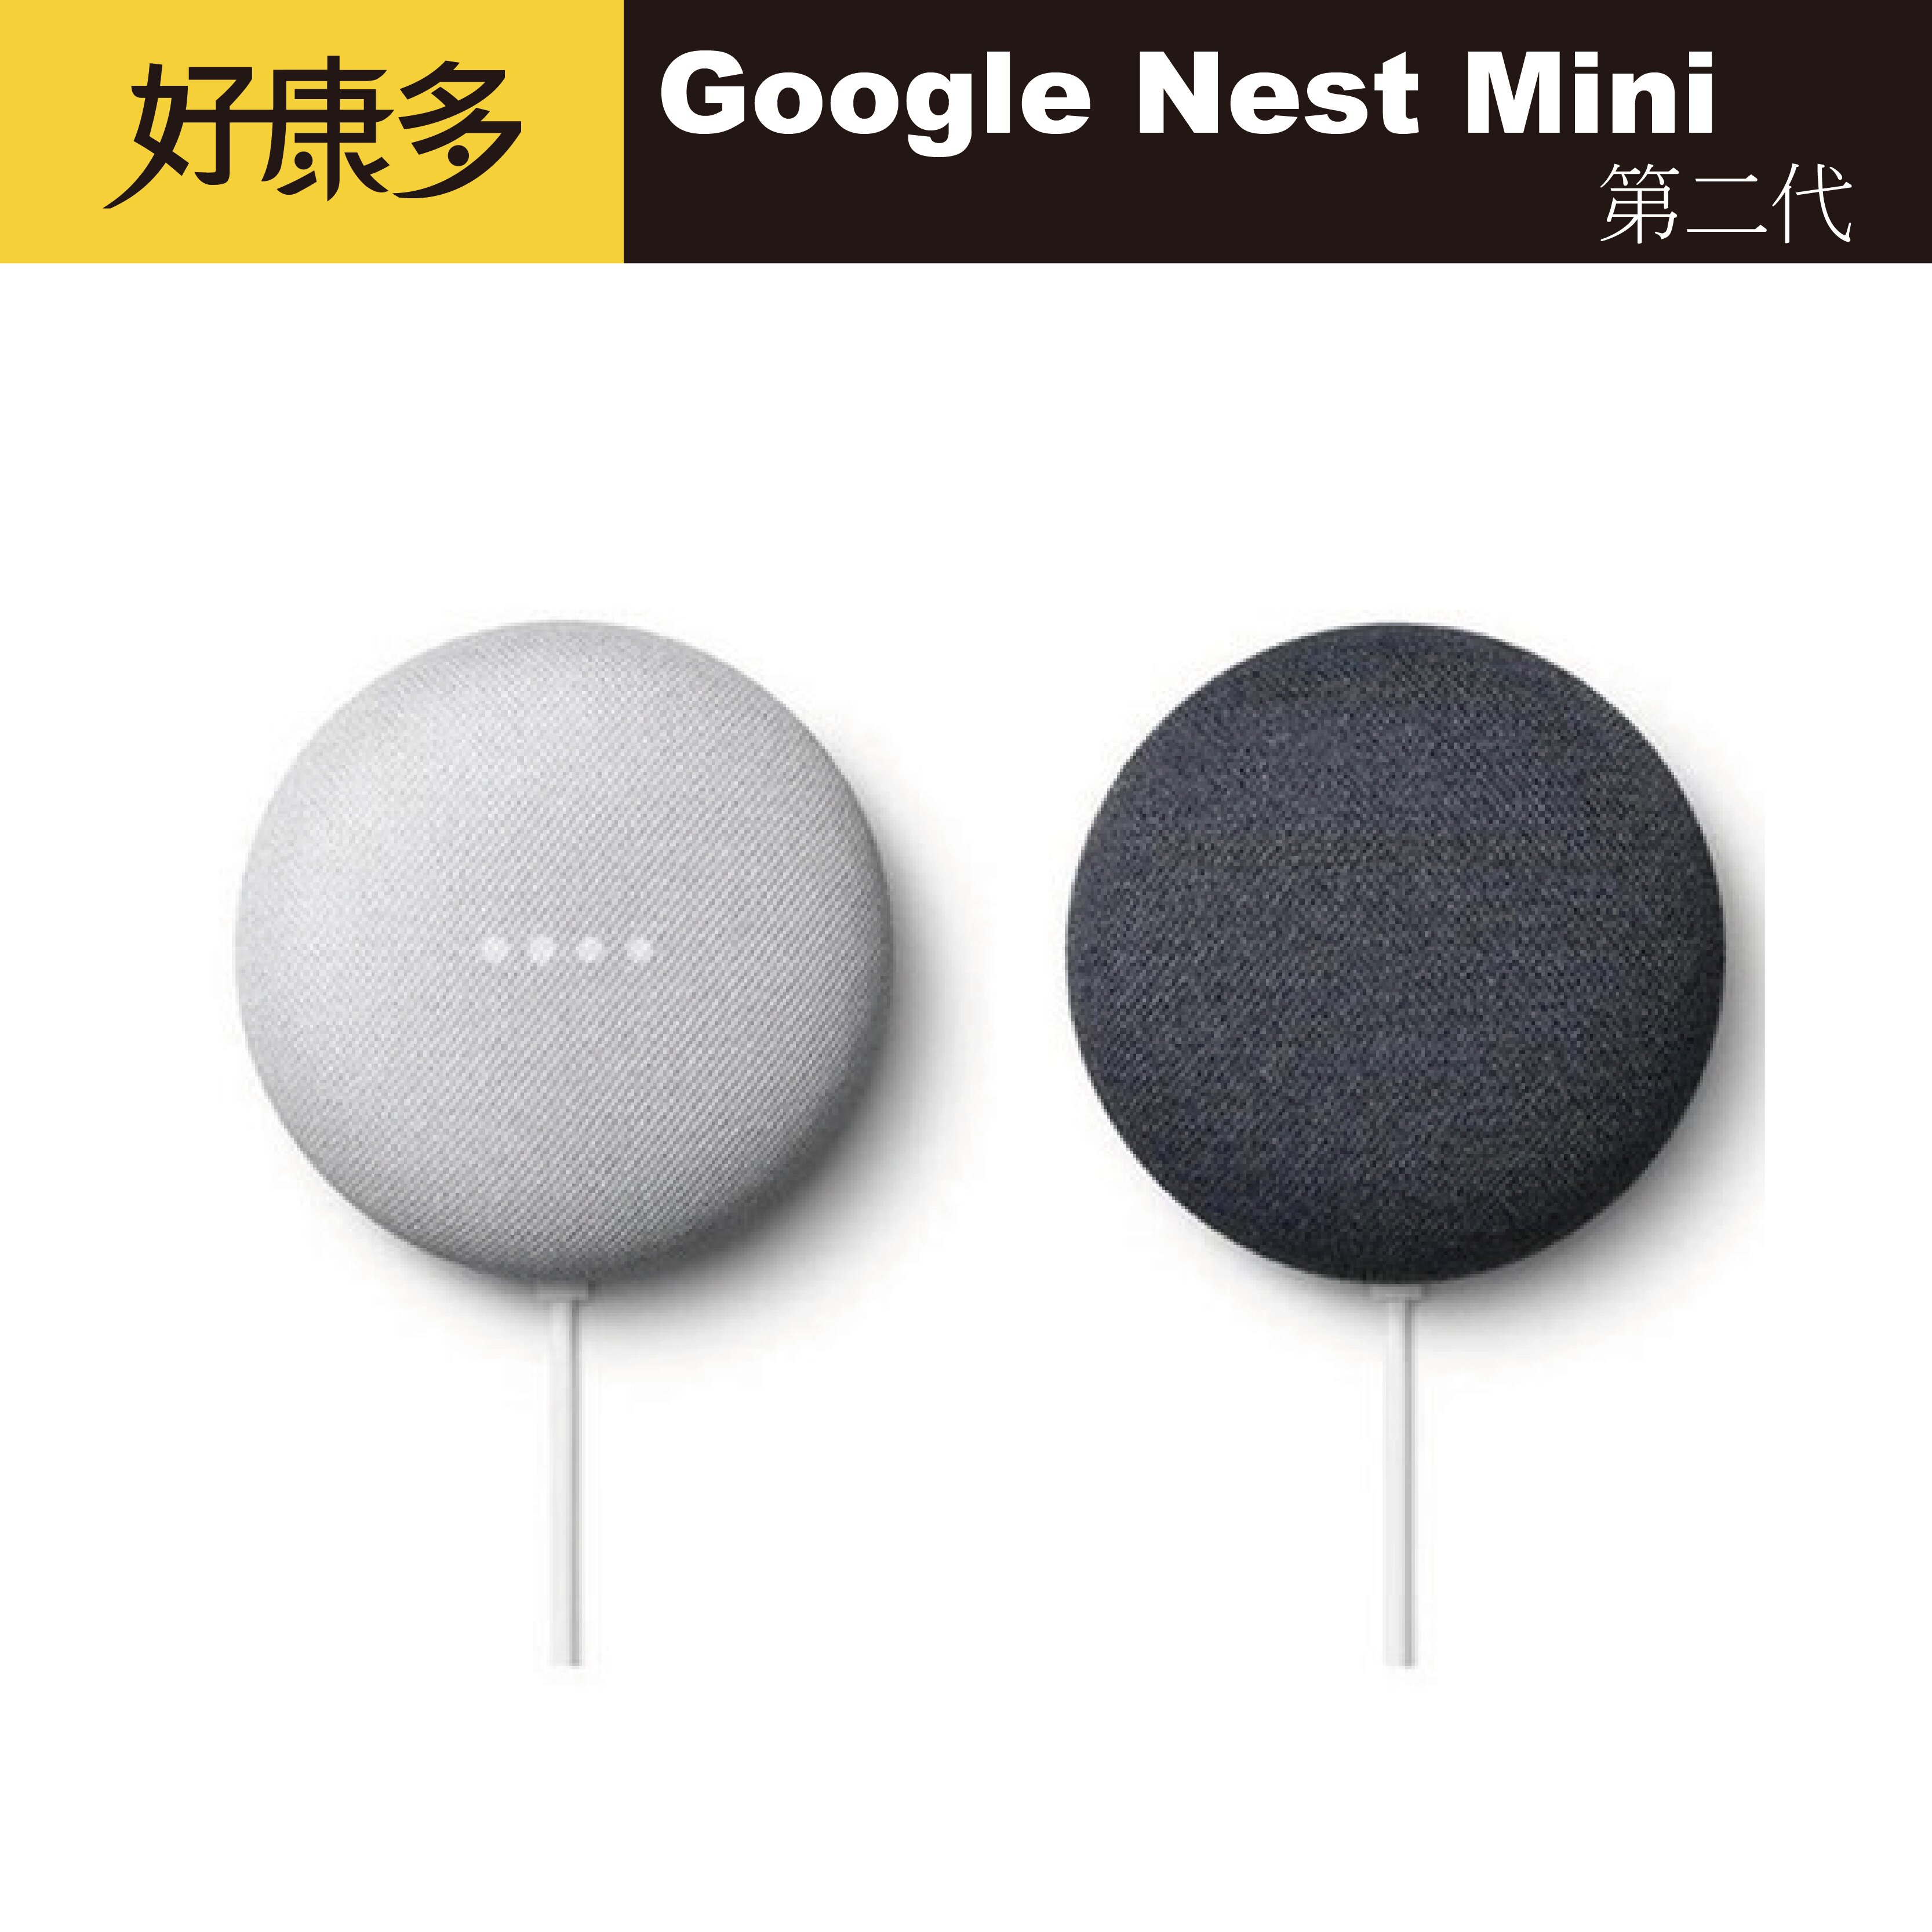 【現貨】Google Nest Mini 中文化第二代 智慧音箱 快速出貨